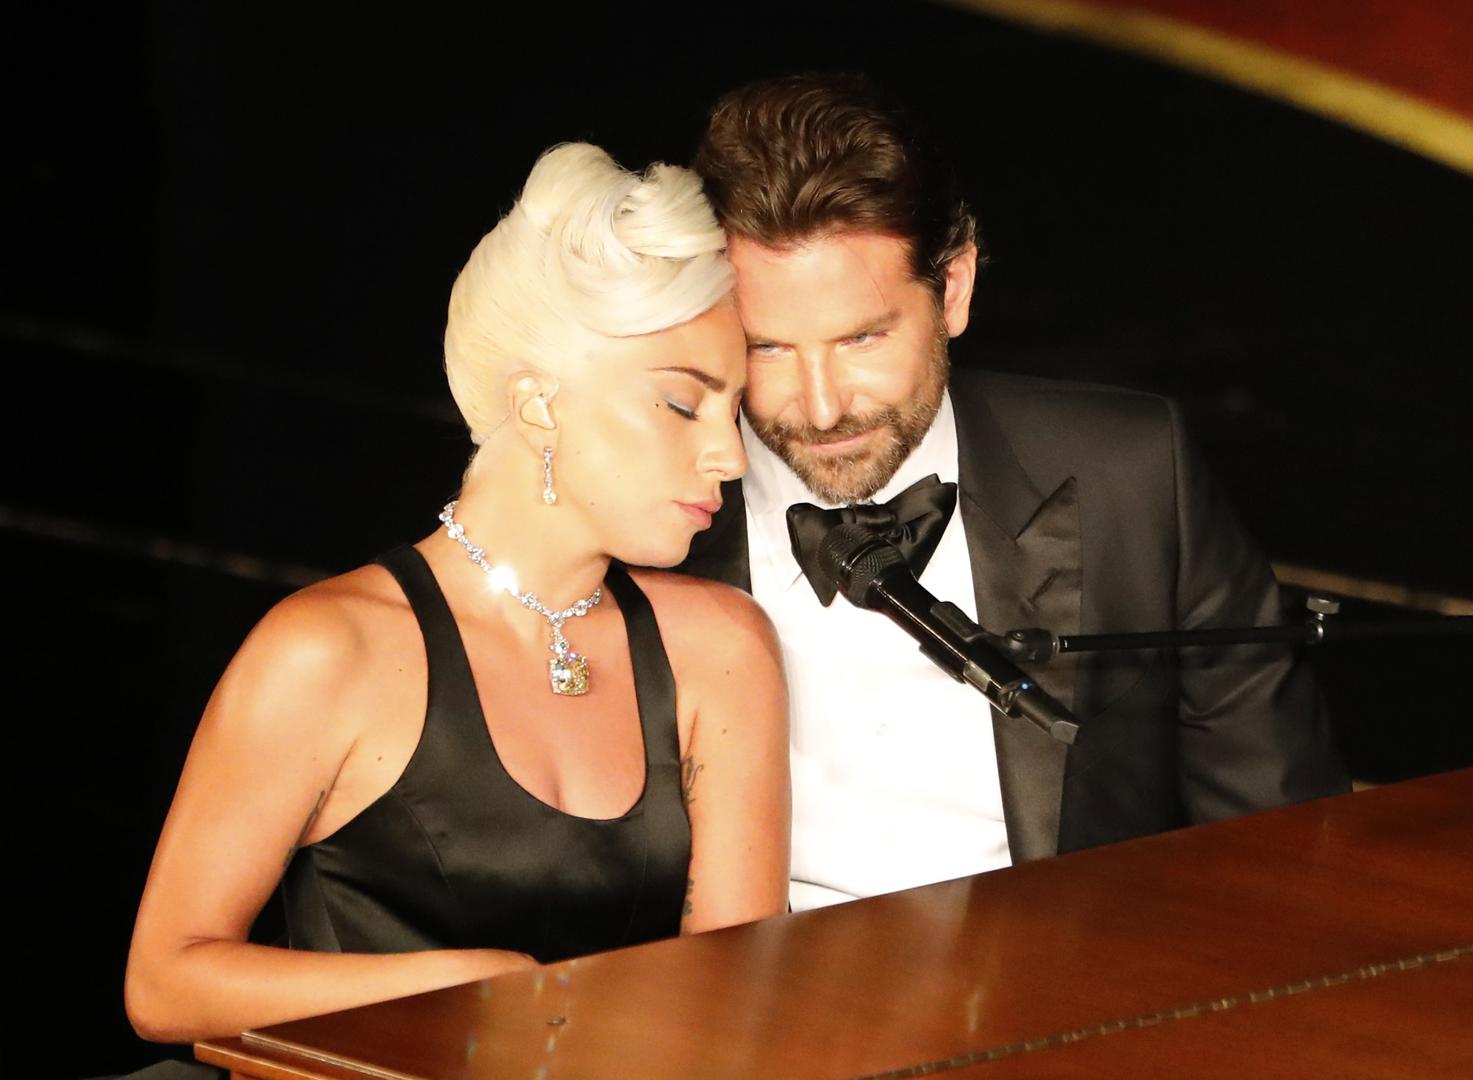 Puno se u prošloj godini pisalo o ljubavnom životu Lady Gage i povezivali su je s filmskim partnerom iz filma "Zvijezda je rođena"
Bradleyjom Cooperom.